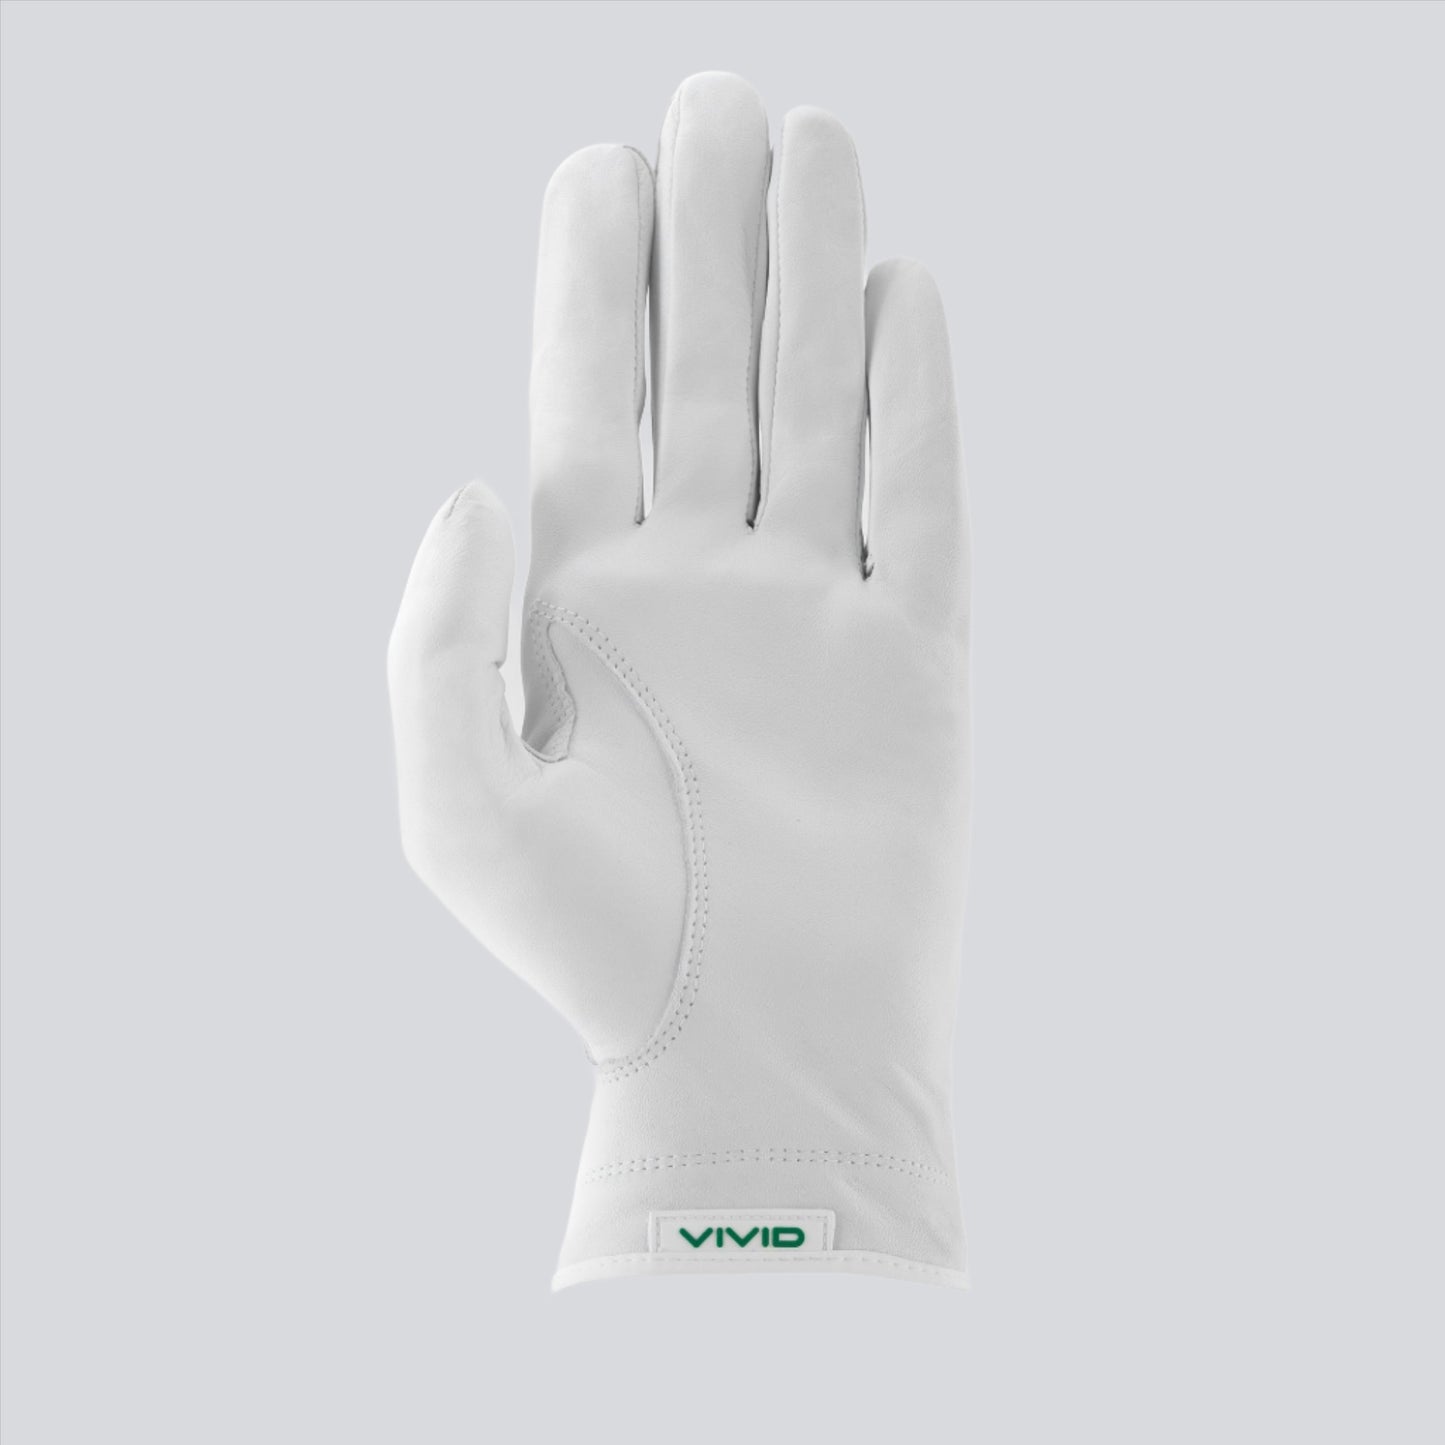 Premium Cabretta Leather Golf Glove Green / White